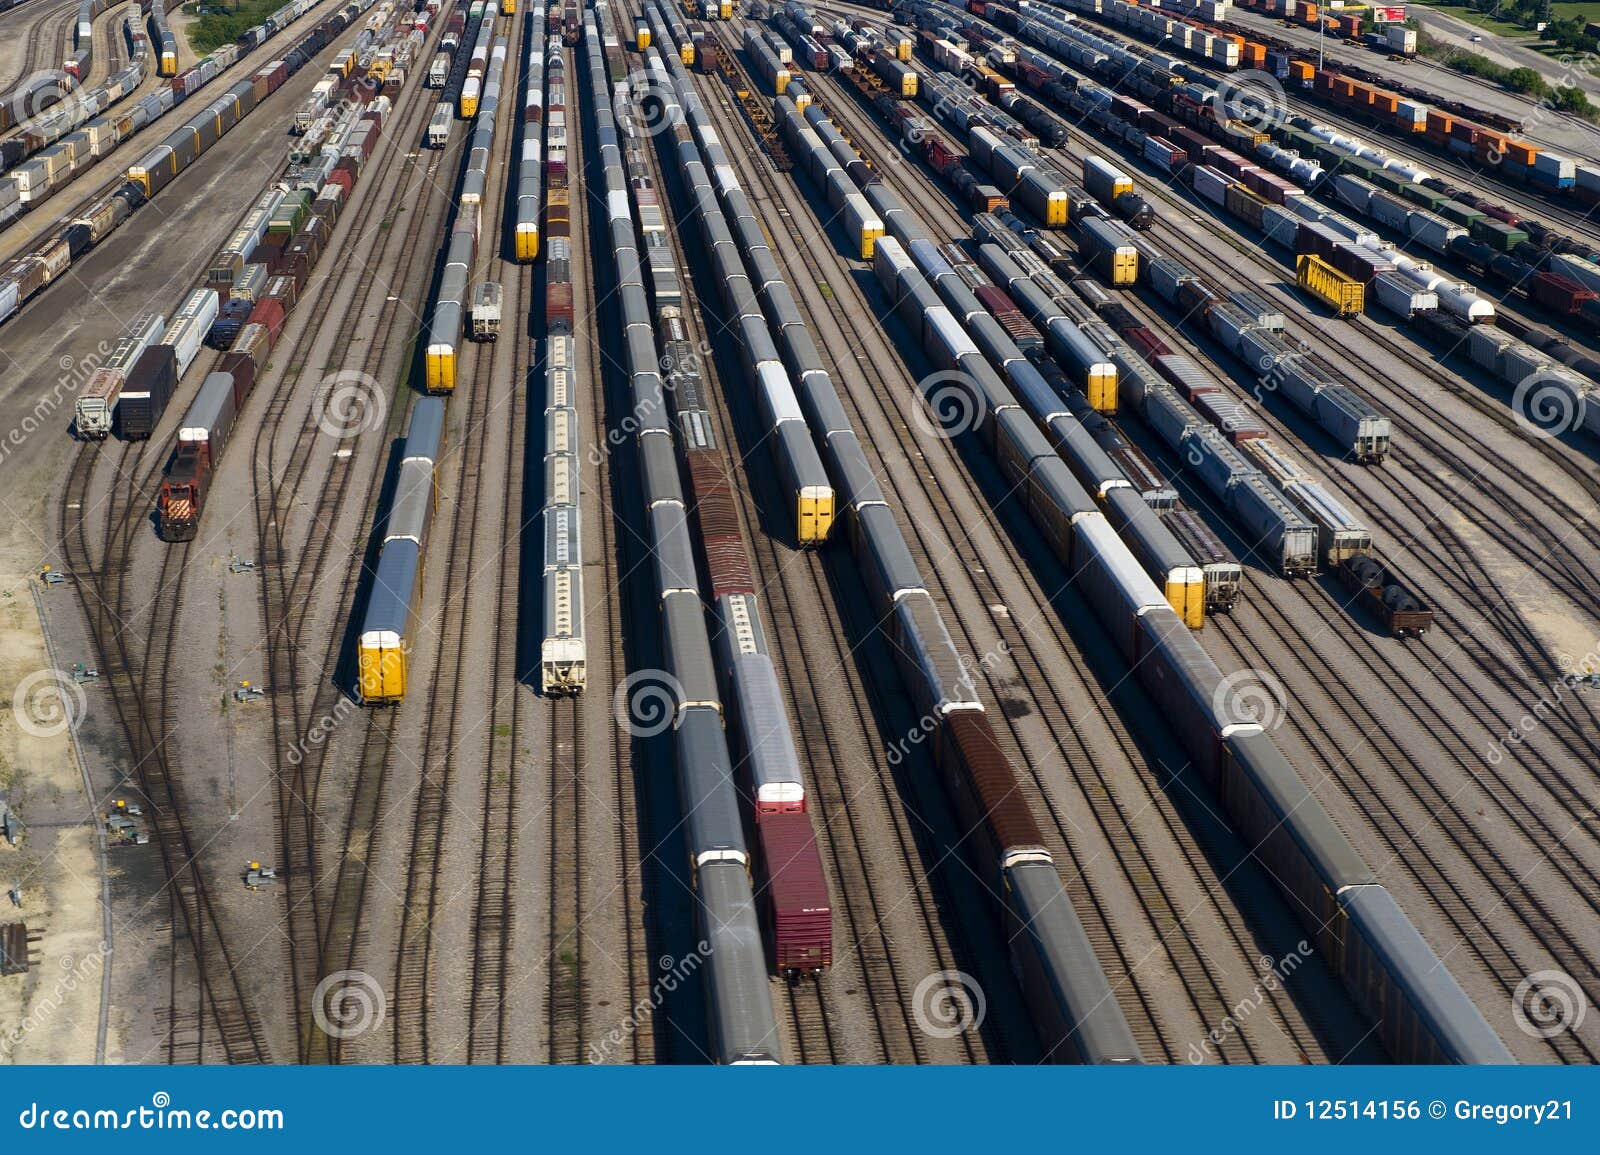 aerial-view-many-train-cars-tracks-12514156.jpg